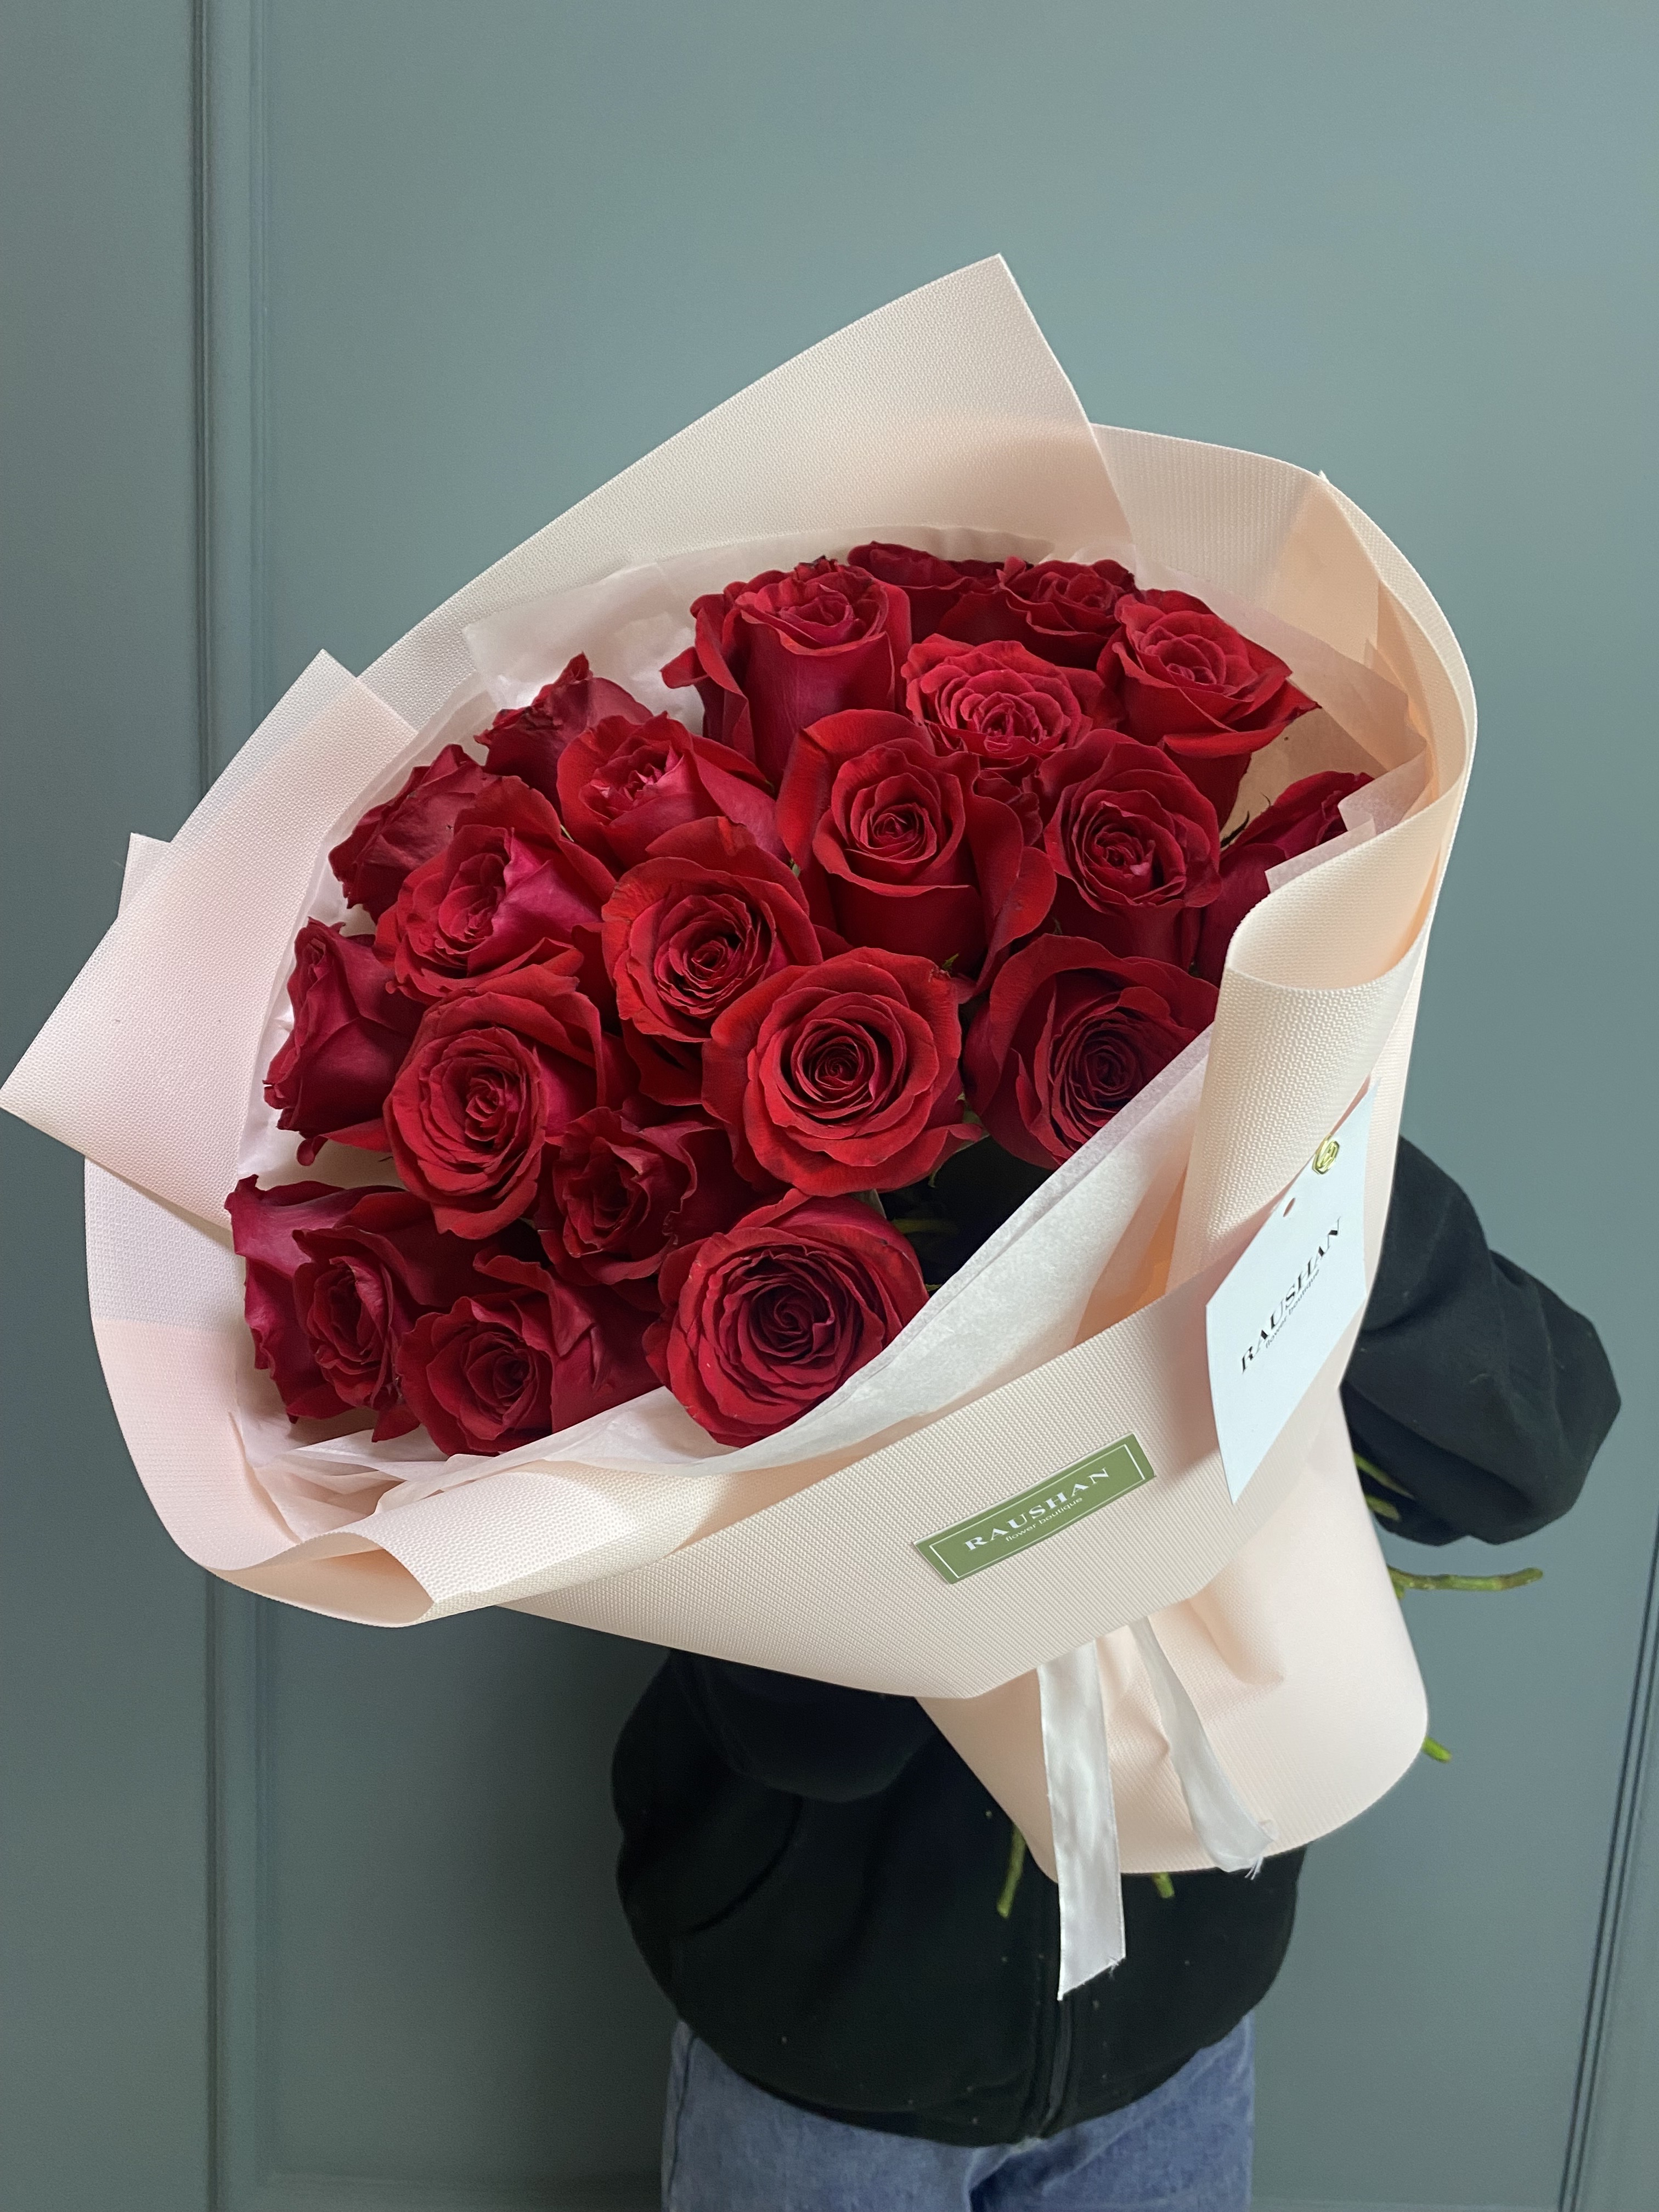 Моно букет из 25 красных роз с доставкой по Астане